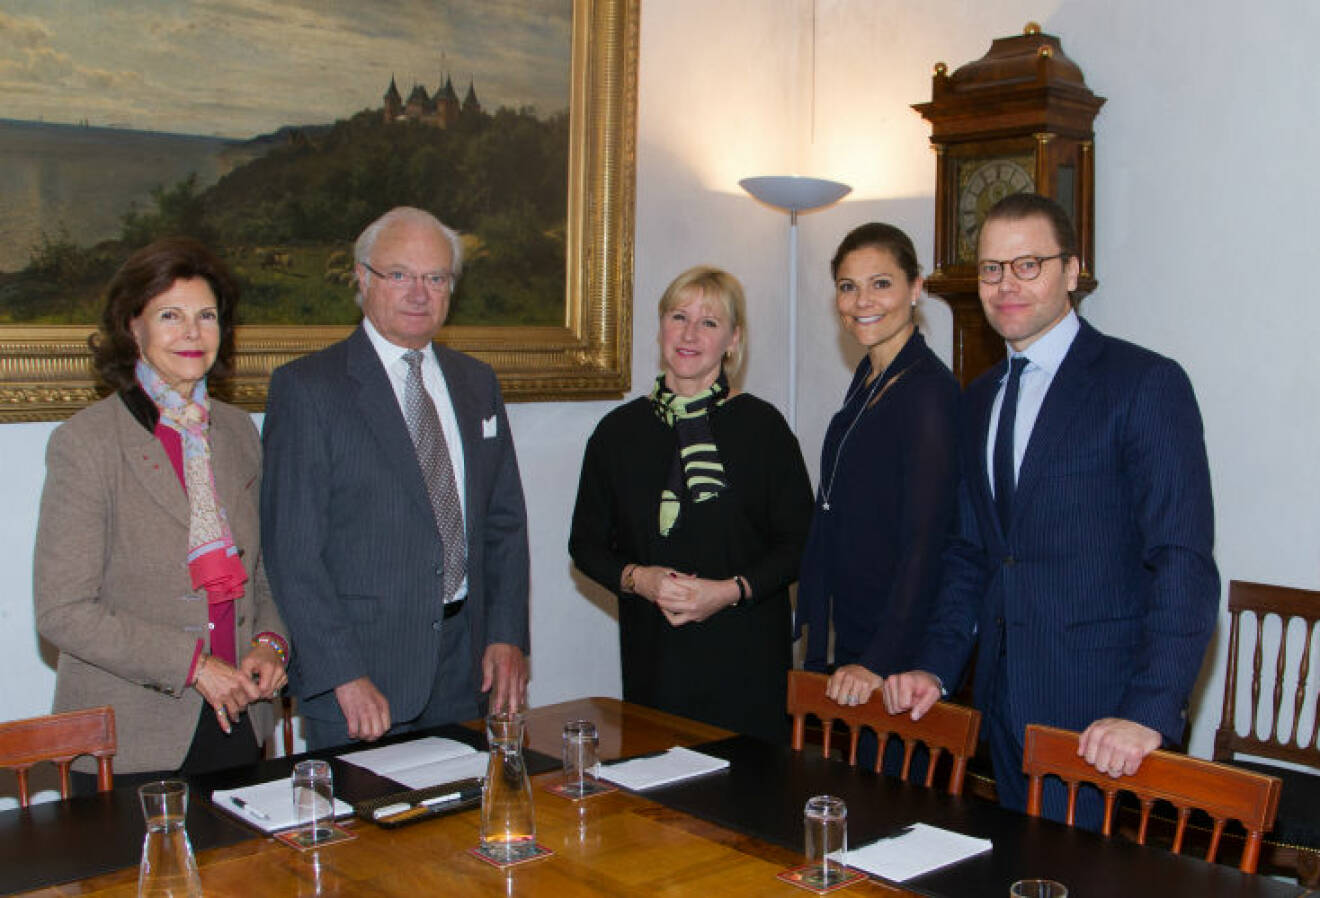 Måndagen den 10 oktober 2016 gav Kungaparet och Kronprinsessparet företräde för utrikesminister Margot Wallström på Kungliga slottet. Vid företrädet gav utrikesministern en utrikespolitisk föredragning för Kungaparet och Kronprinsessparet.